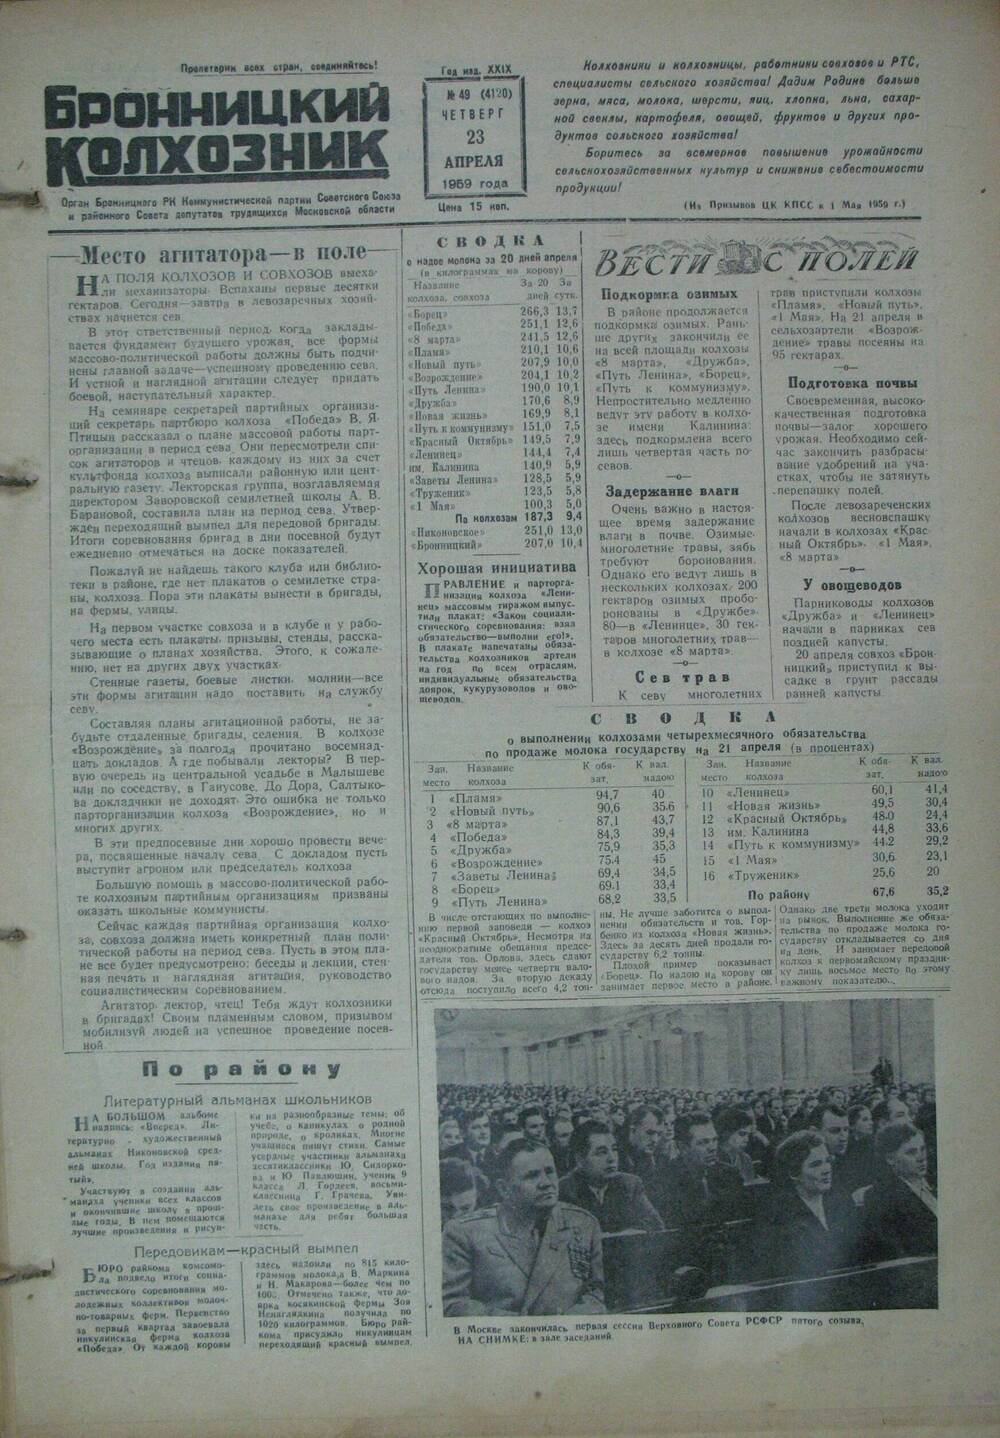 Бронницкий колхозник,  газета № 49 от 23 апреля 1959г